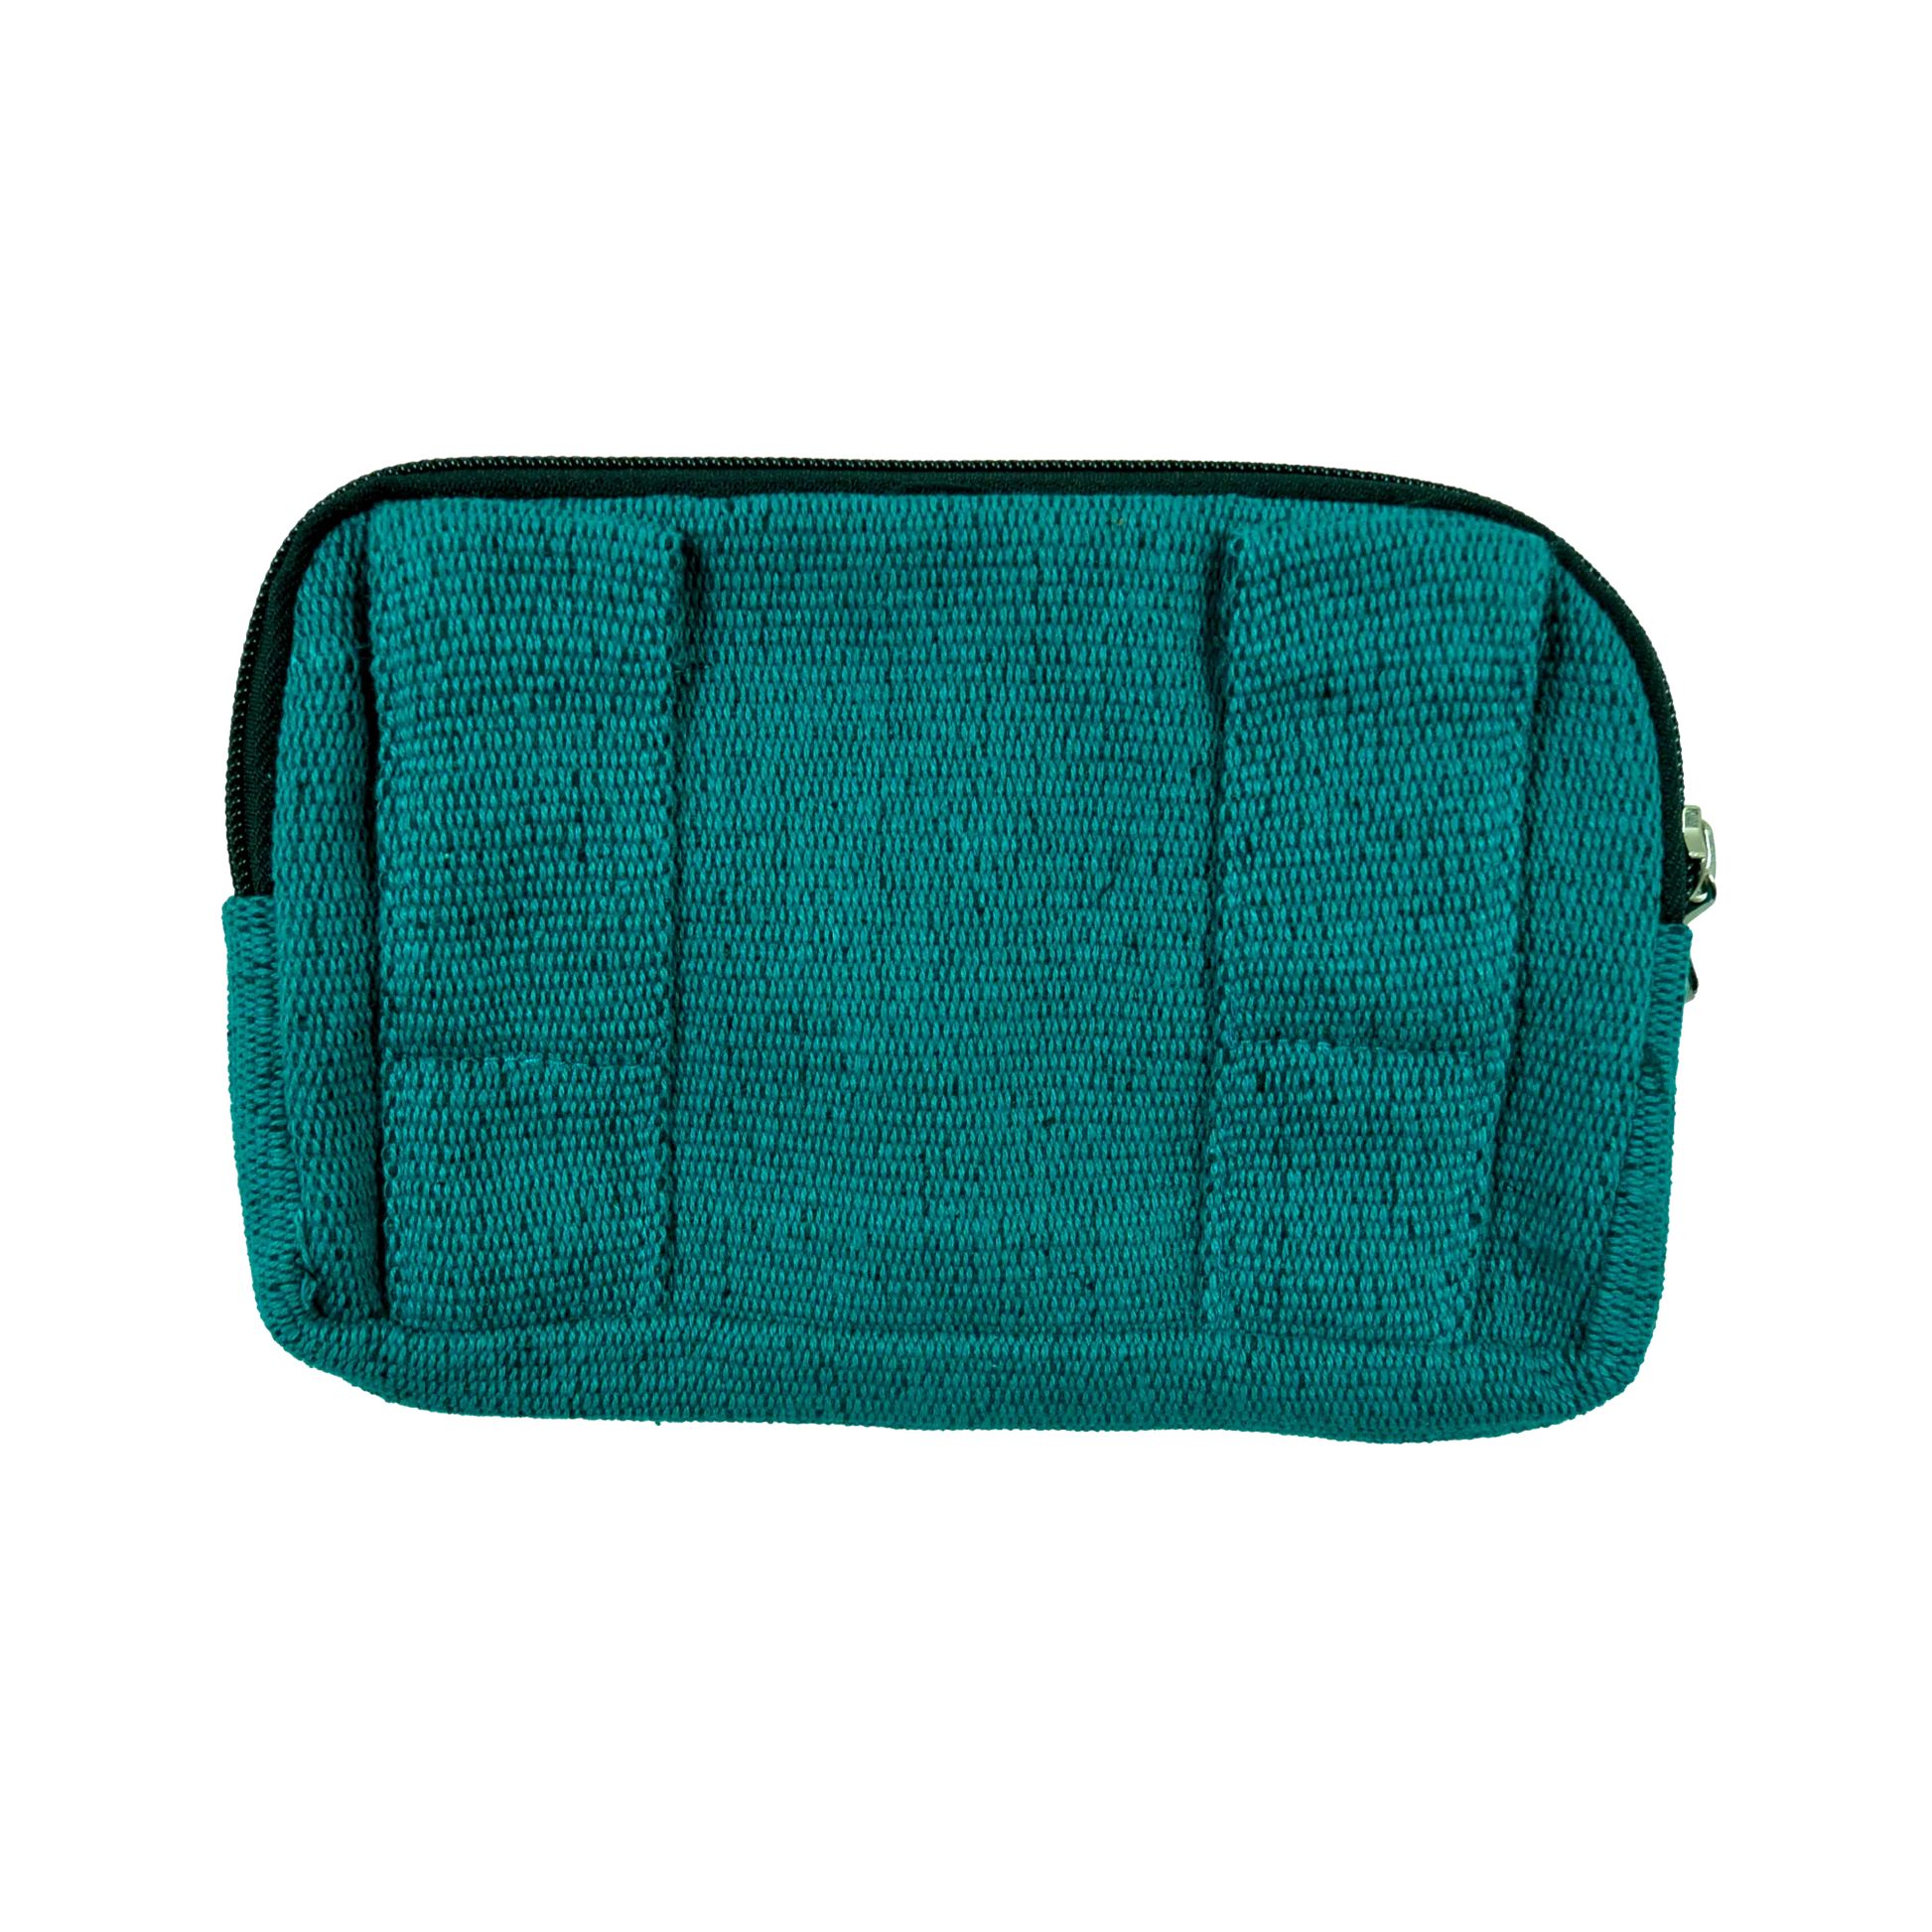 Beuteltsche aus Canvas Türkis. Die Tasche besitzt Reisverschlussfächer und ein Einsteckfach vorne und kann mit zwei Gürtelschlaufen auf der Rückseite an jeden Gürtel angebracht werden.